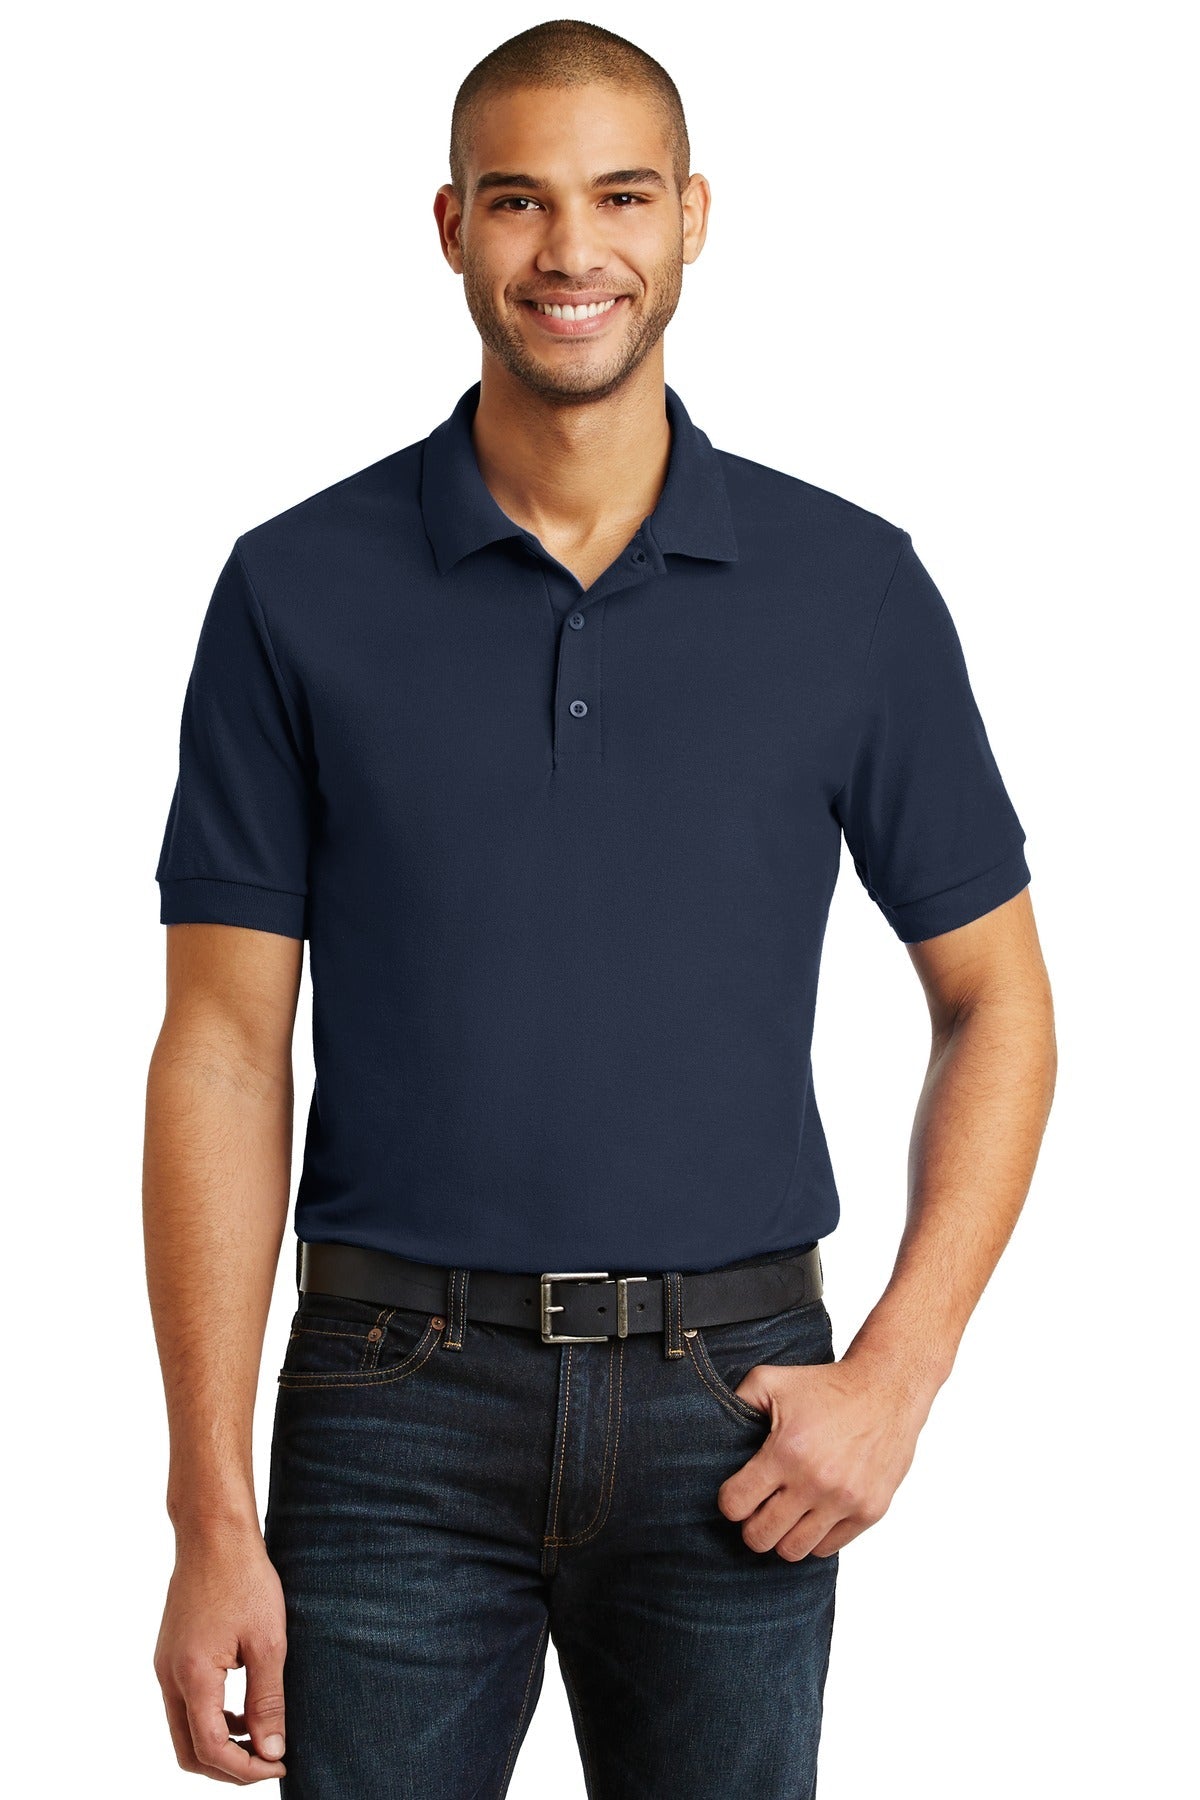 Gildan® 6.6-Ounce 100% Double Pique Cotton Sport Shirt. 82800 - DFW Impression